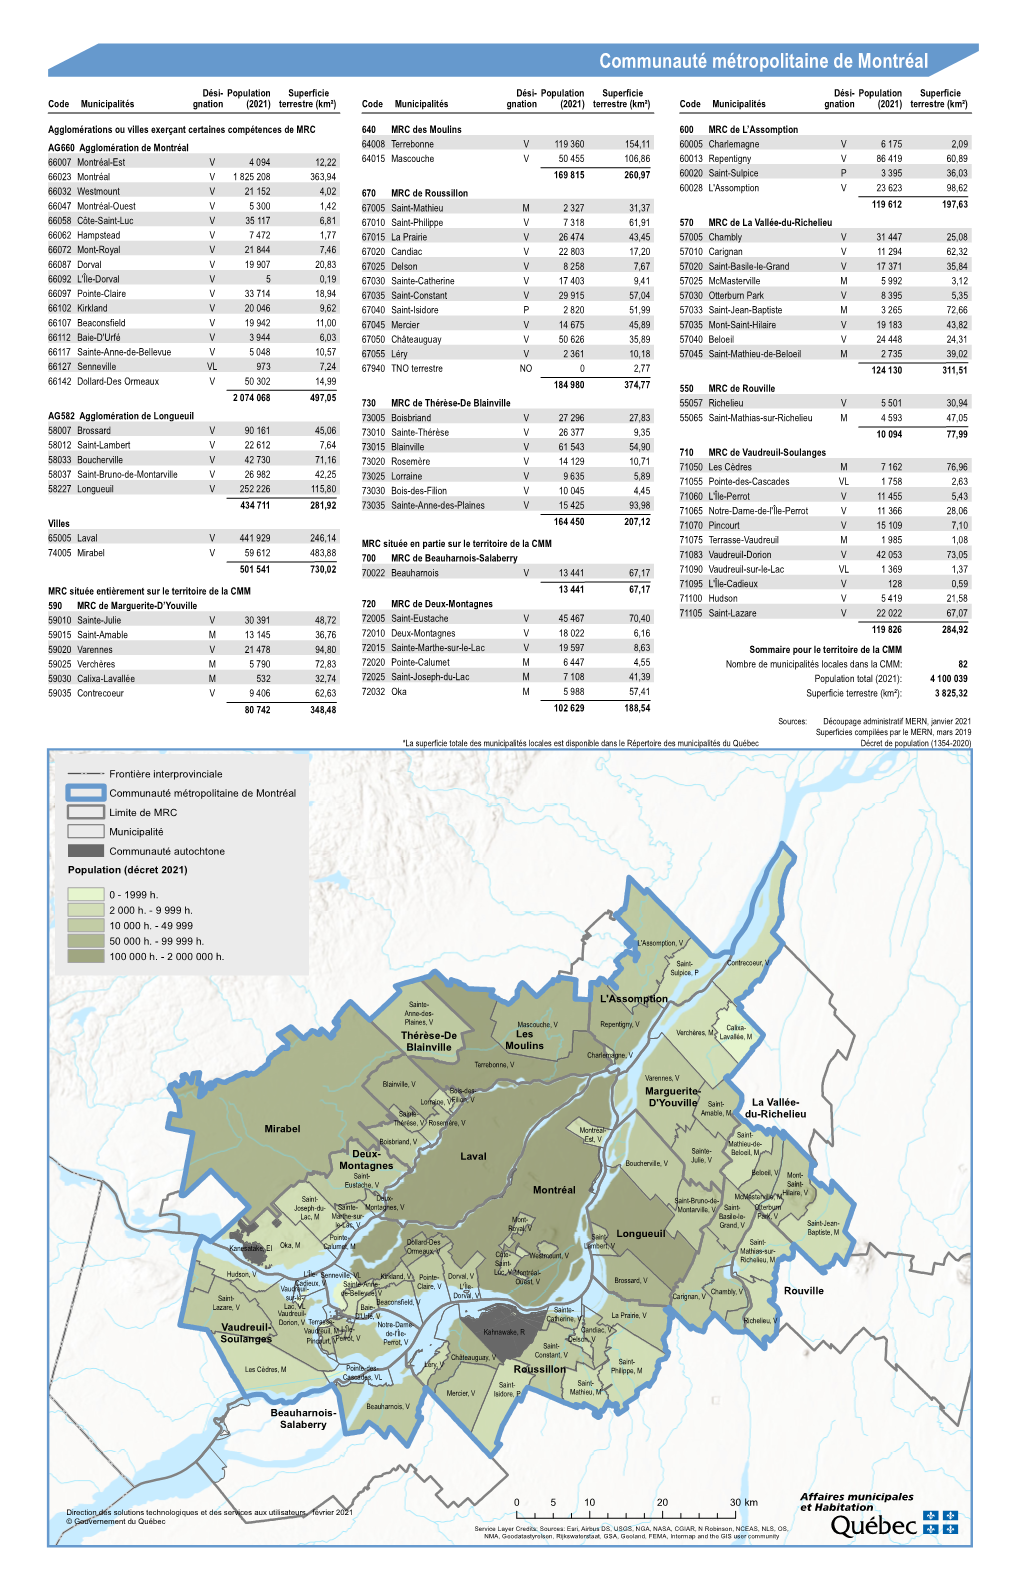 Communauté Métropolitaine De Montréal Limite De MRC Municipalité Communauté Autochtone Population (Décret 2021)